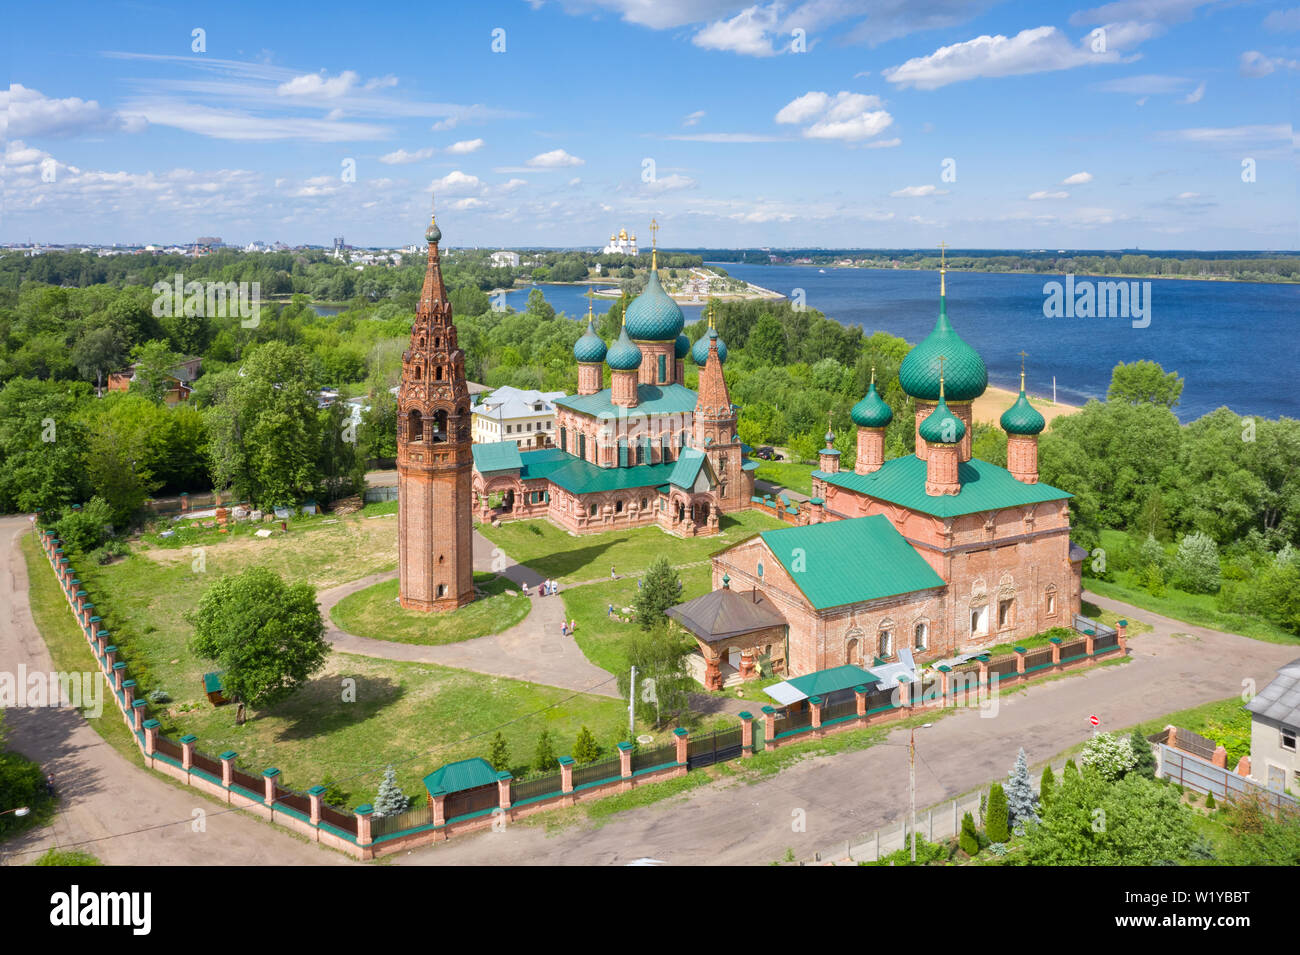 Vue aérienne du complexe des temples de Korovniki, Iaroslavl, Russie Banque D'Images